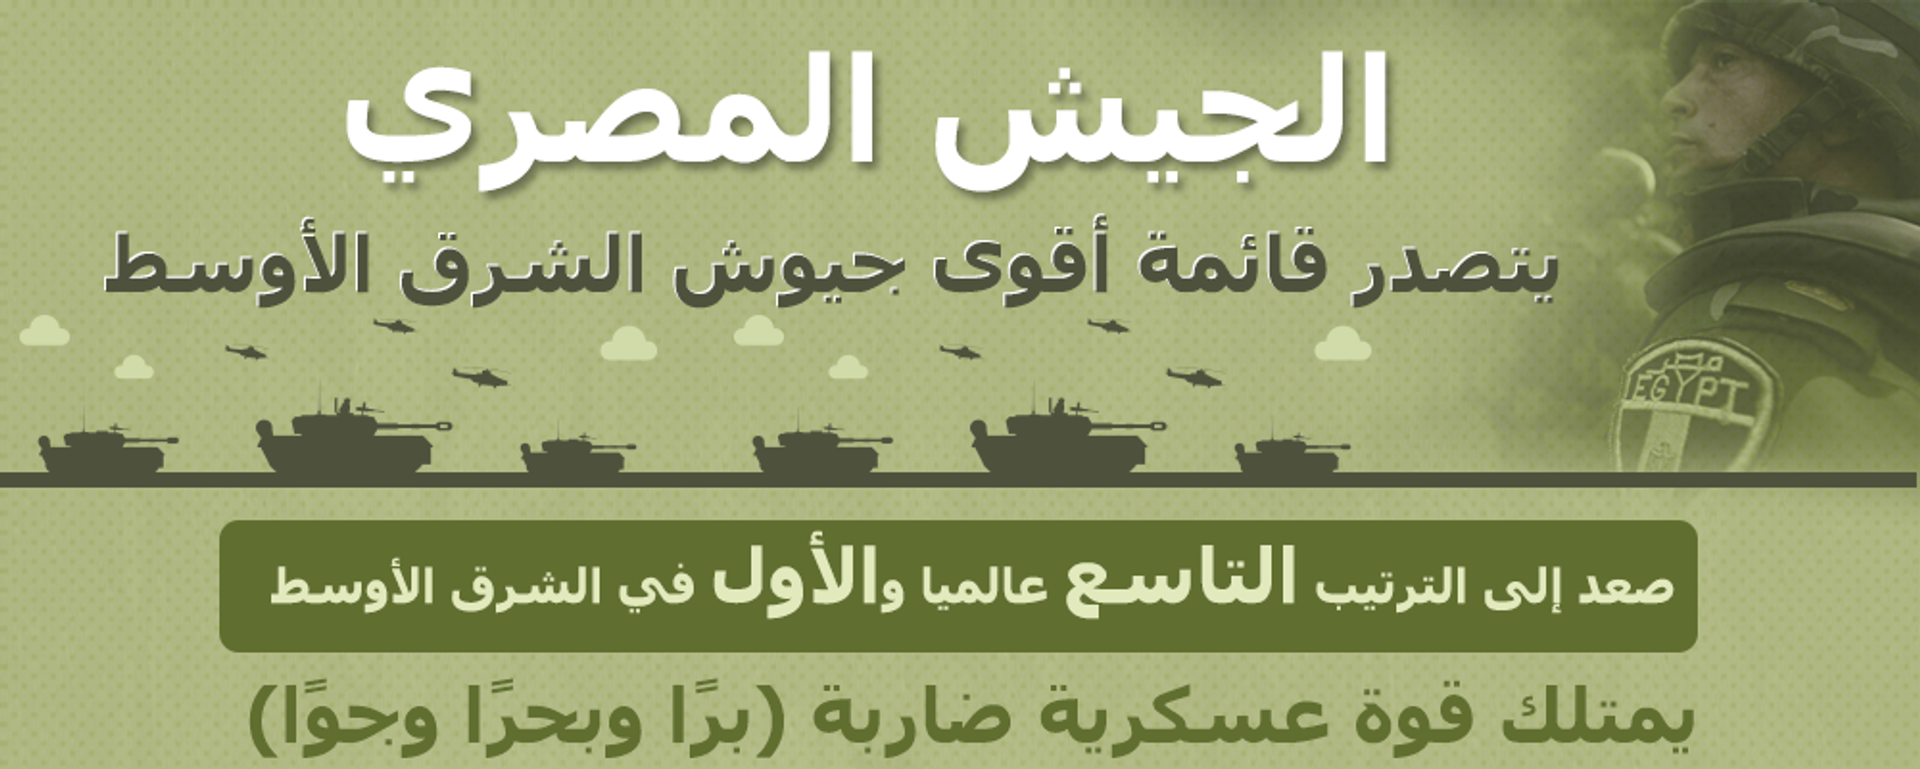 الجيش المصري يتصدر قائمة أقوى جيوش الشرق الأوسط - سبوتنيك عربي, 1920, 19.06.2020